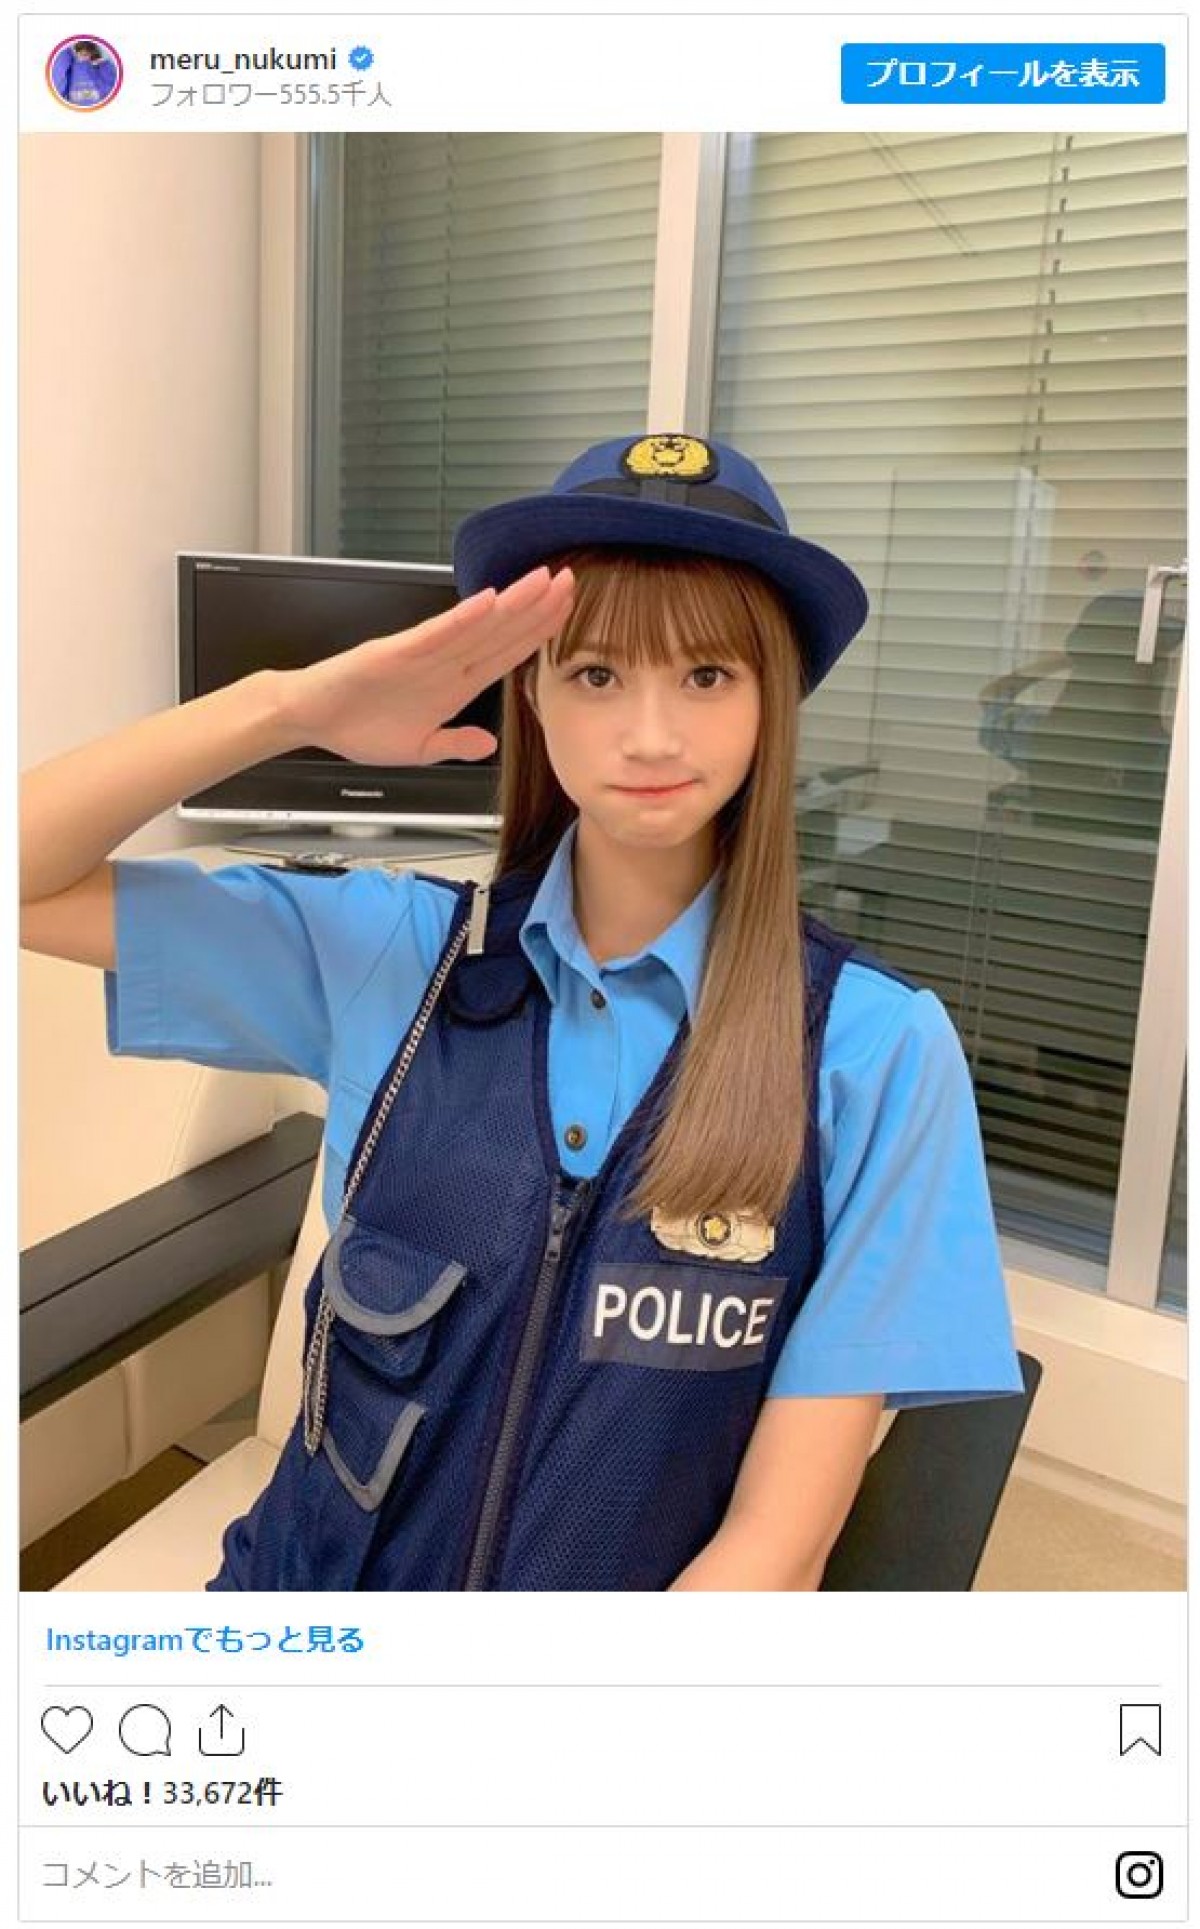 “めるる”生見愛瑠、警察官姿でキリッとポーズ「かわいい」と反響